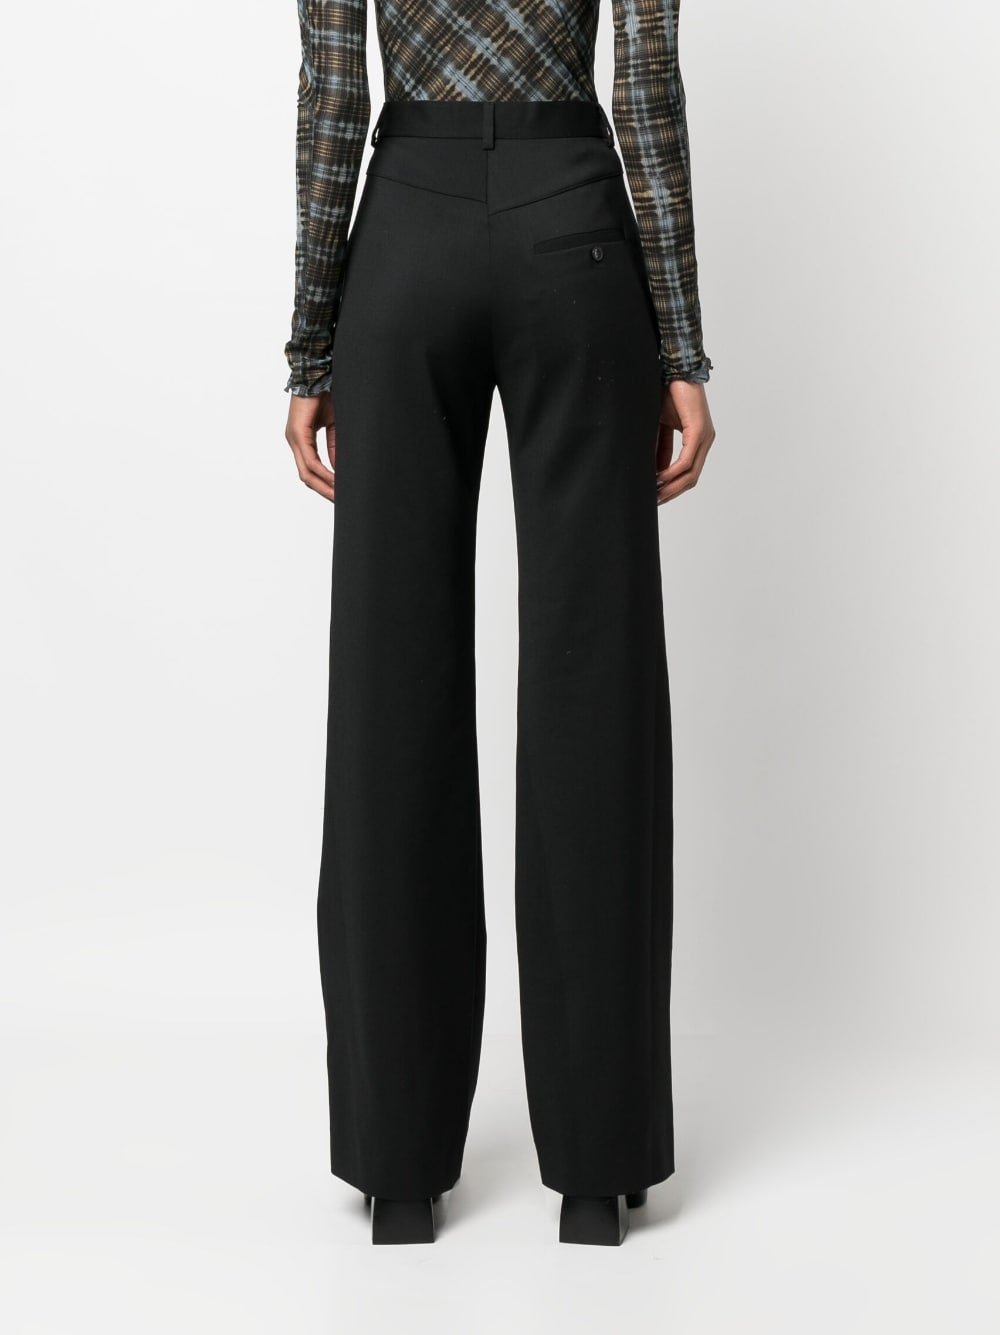 Vivienne Westwood Trousers Black